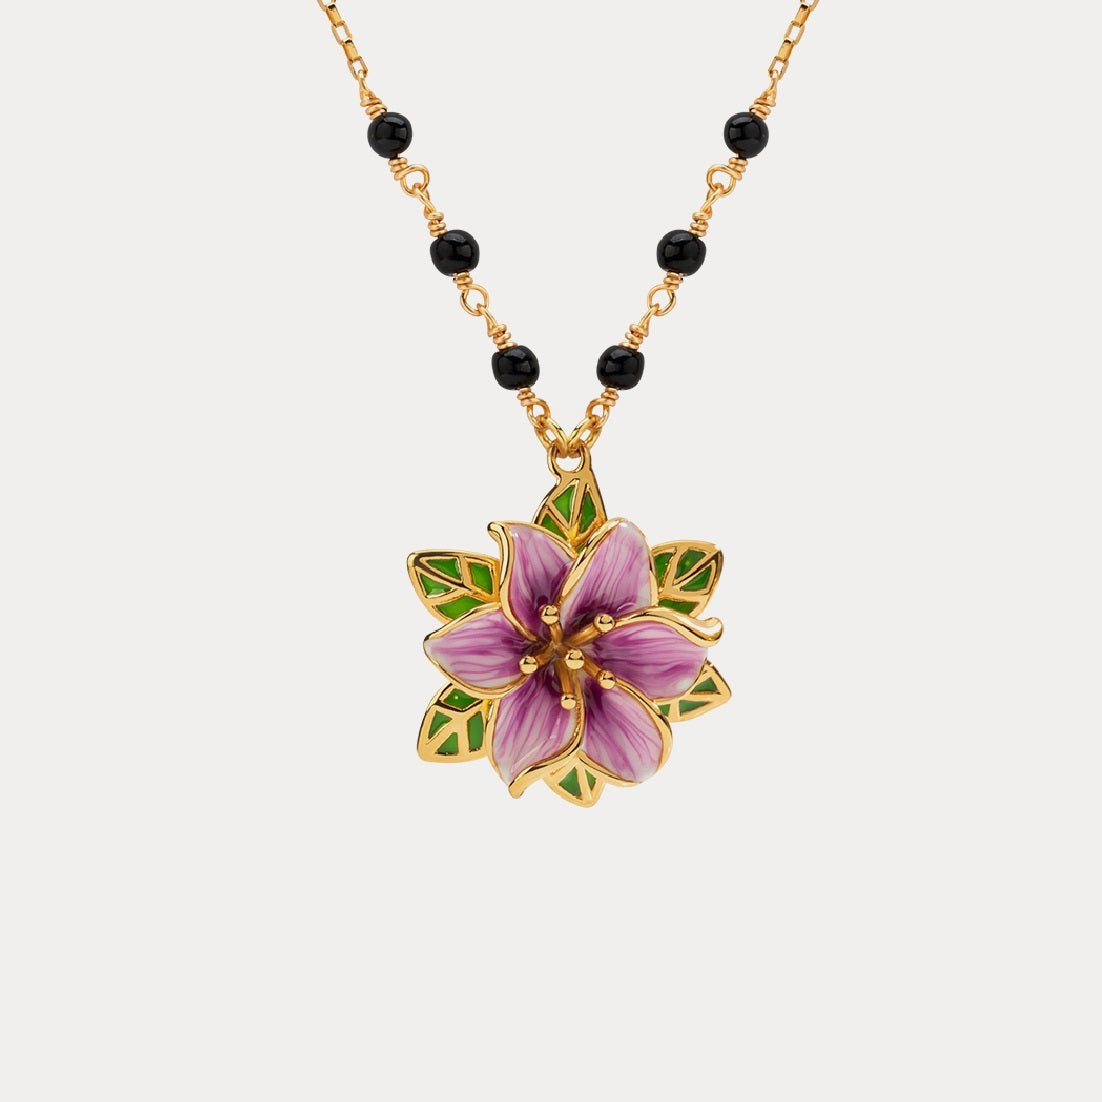 Selenichast bellflower necklace